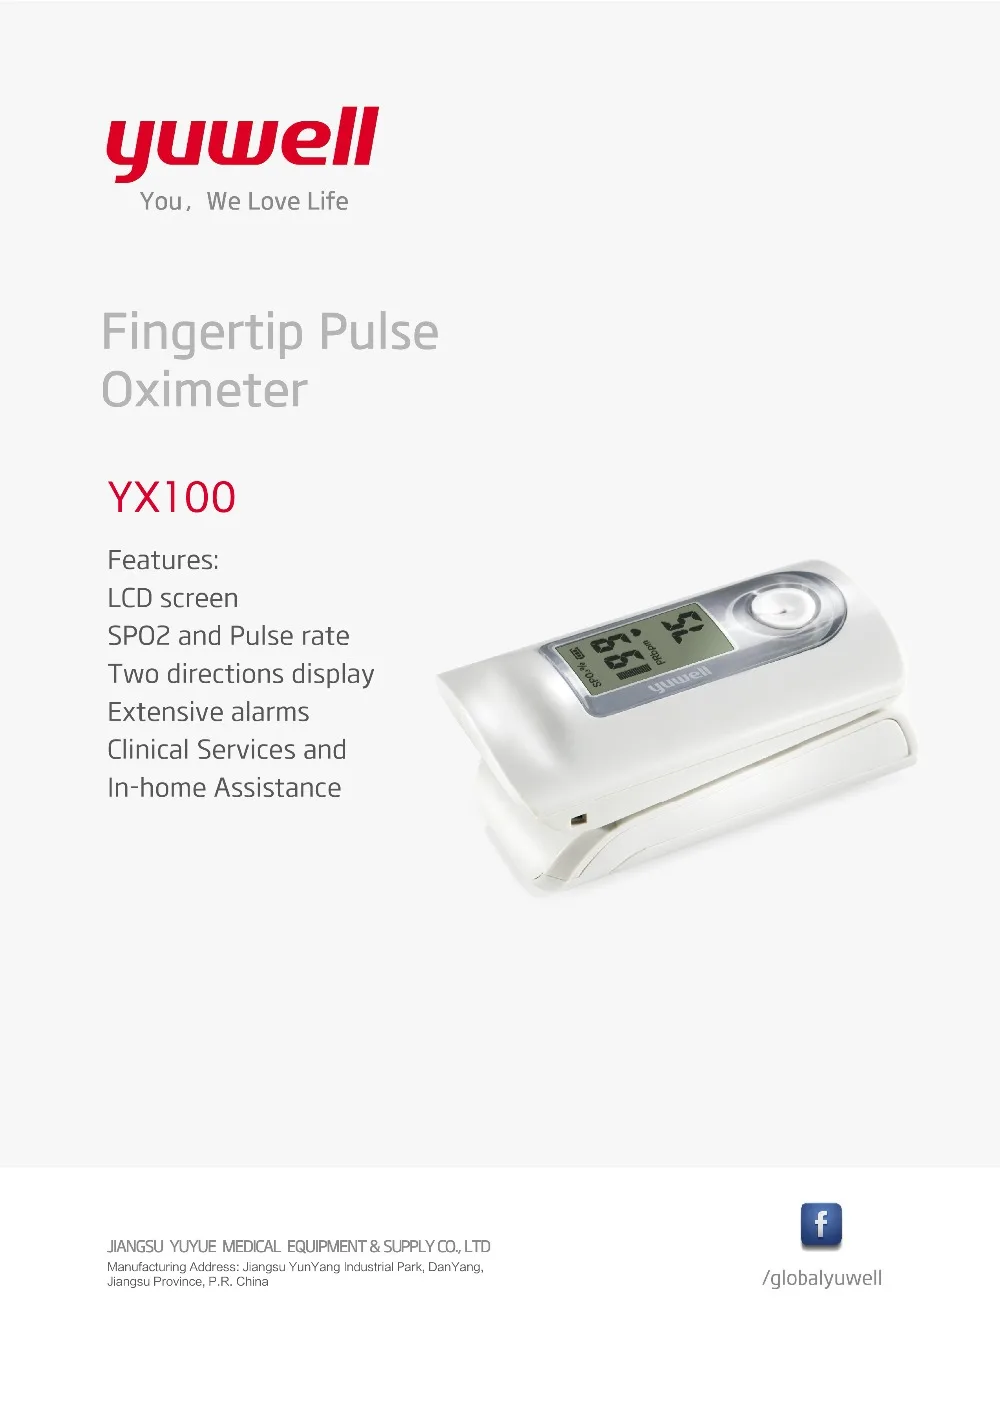 

Yuwell YX100 Medical Household Digital Fingertip Pulse Oximeter Blood Oxygen Saturation Meter Finger SPO2 PR Monitor Tool CE